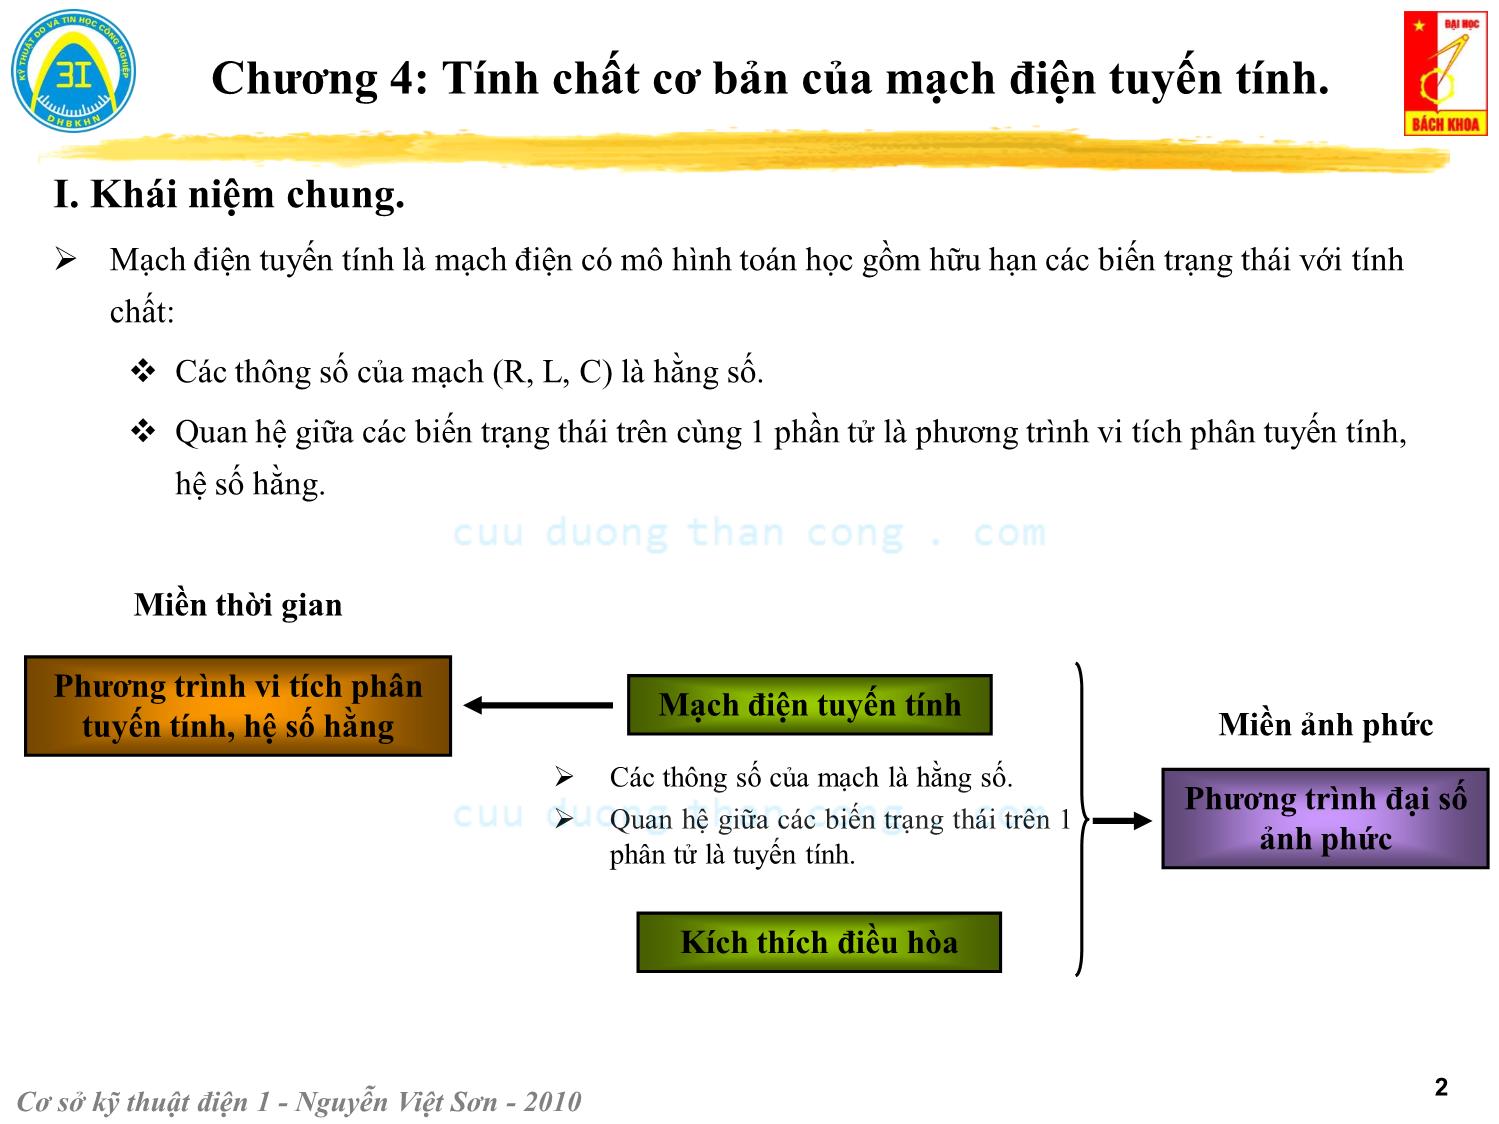 Bài giảng Kỹ thuật điện 1 - Chương 4: Tính chất cơ bản của mạch điện tuyến tính - Nguyễn Việt Sơn trang 2